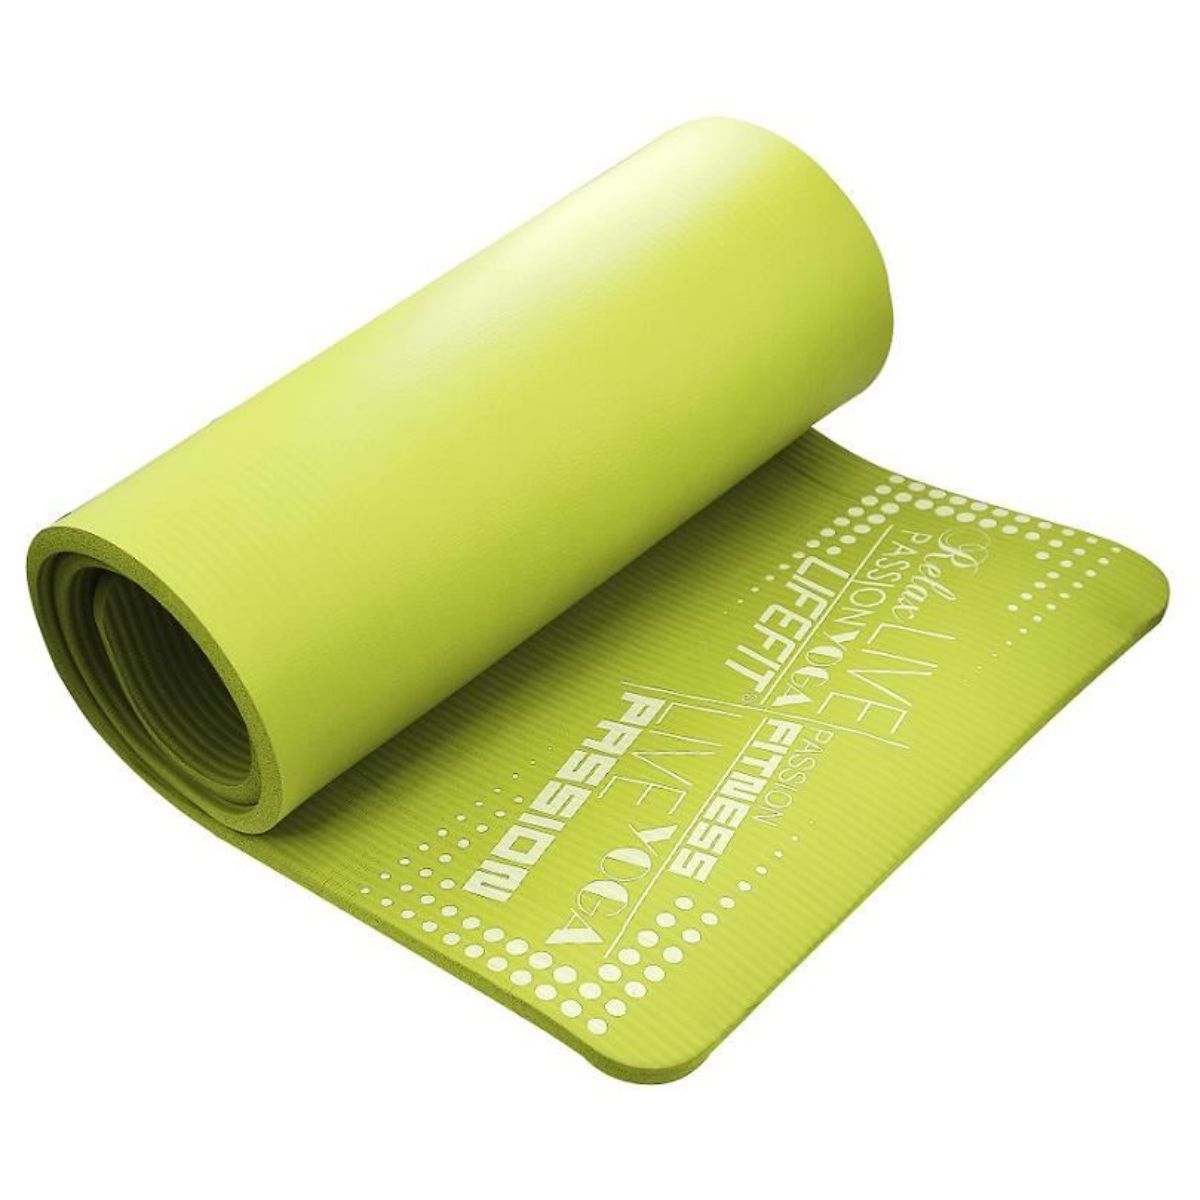 Covoras yoga Exclusive Plus DHS, Verde, 180 cm DHS imagine 2022